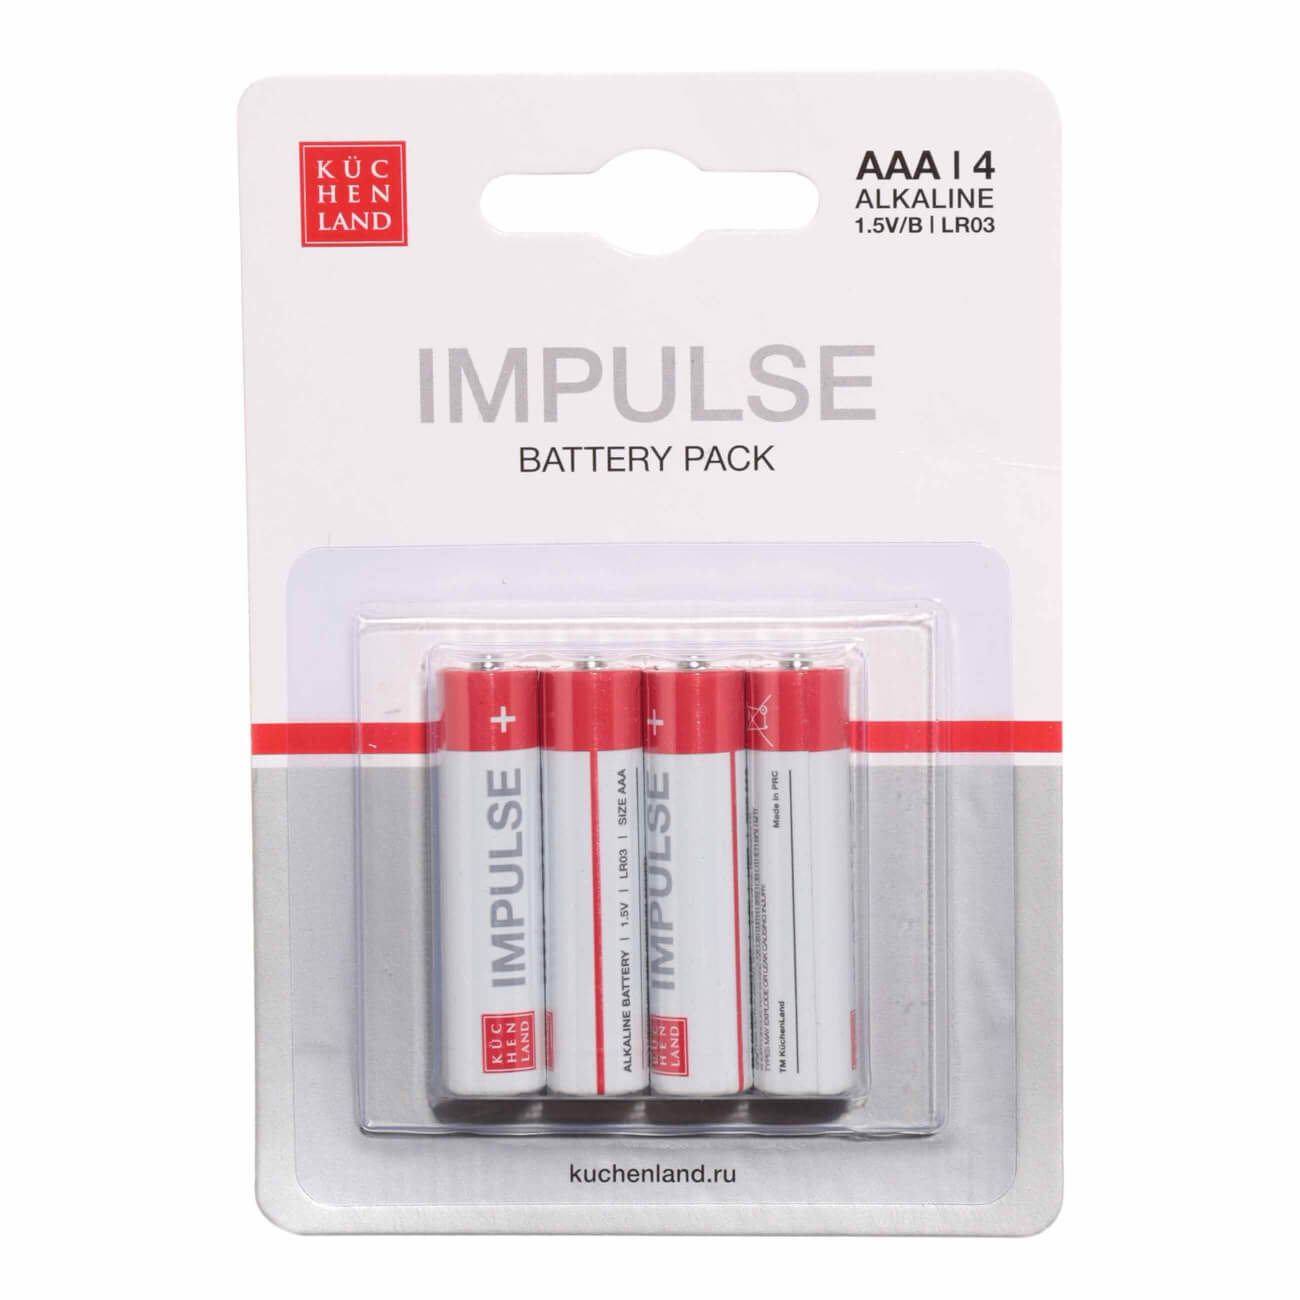 Батарейка AAA LR03, щелочная, 4 шт, Impulse батарейка aaa lr03 щелочная 12 шт impulse